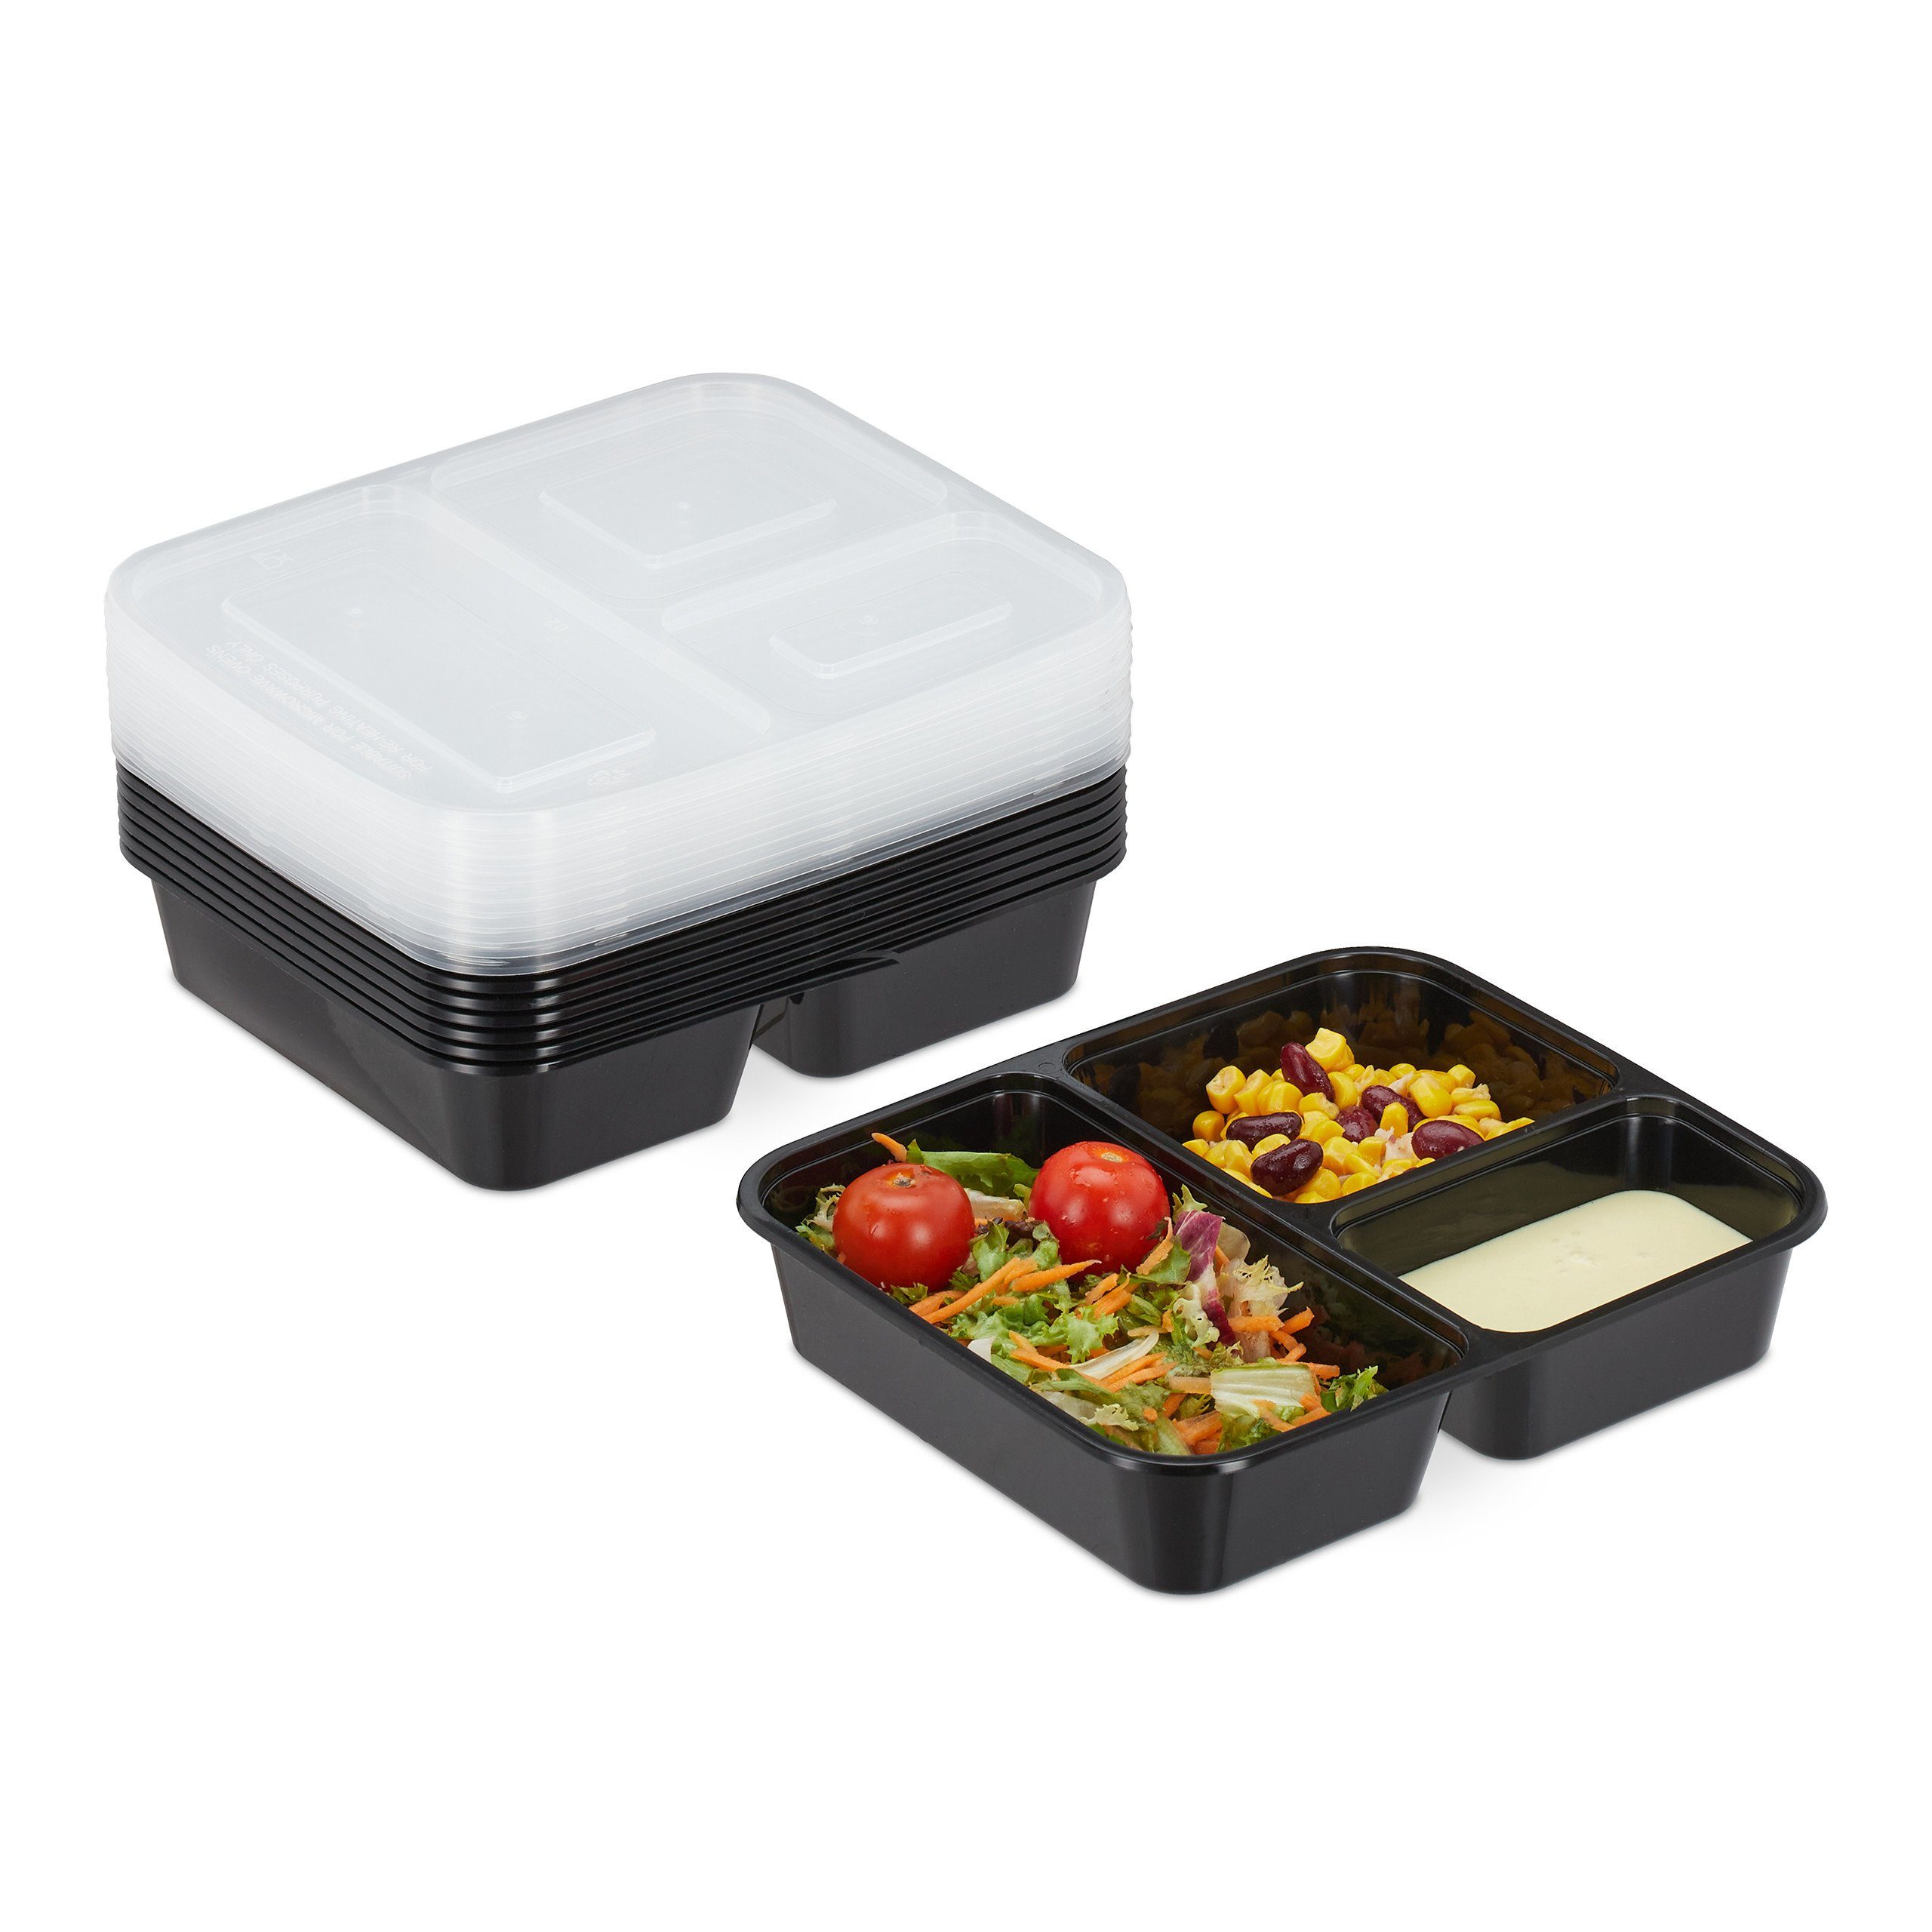 relaxdays Lunchbox 10er Set Meal Prep Одежда и товары для бокса 3 Fächer, Kunststoff